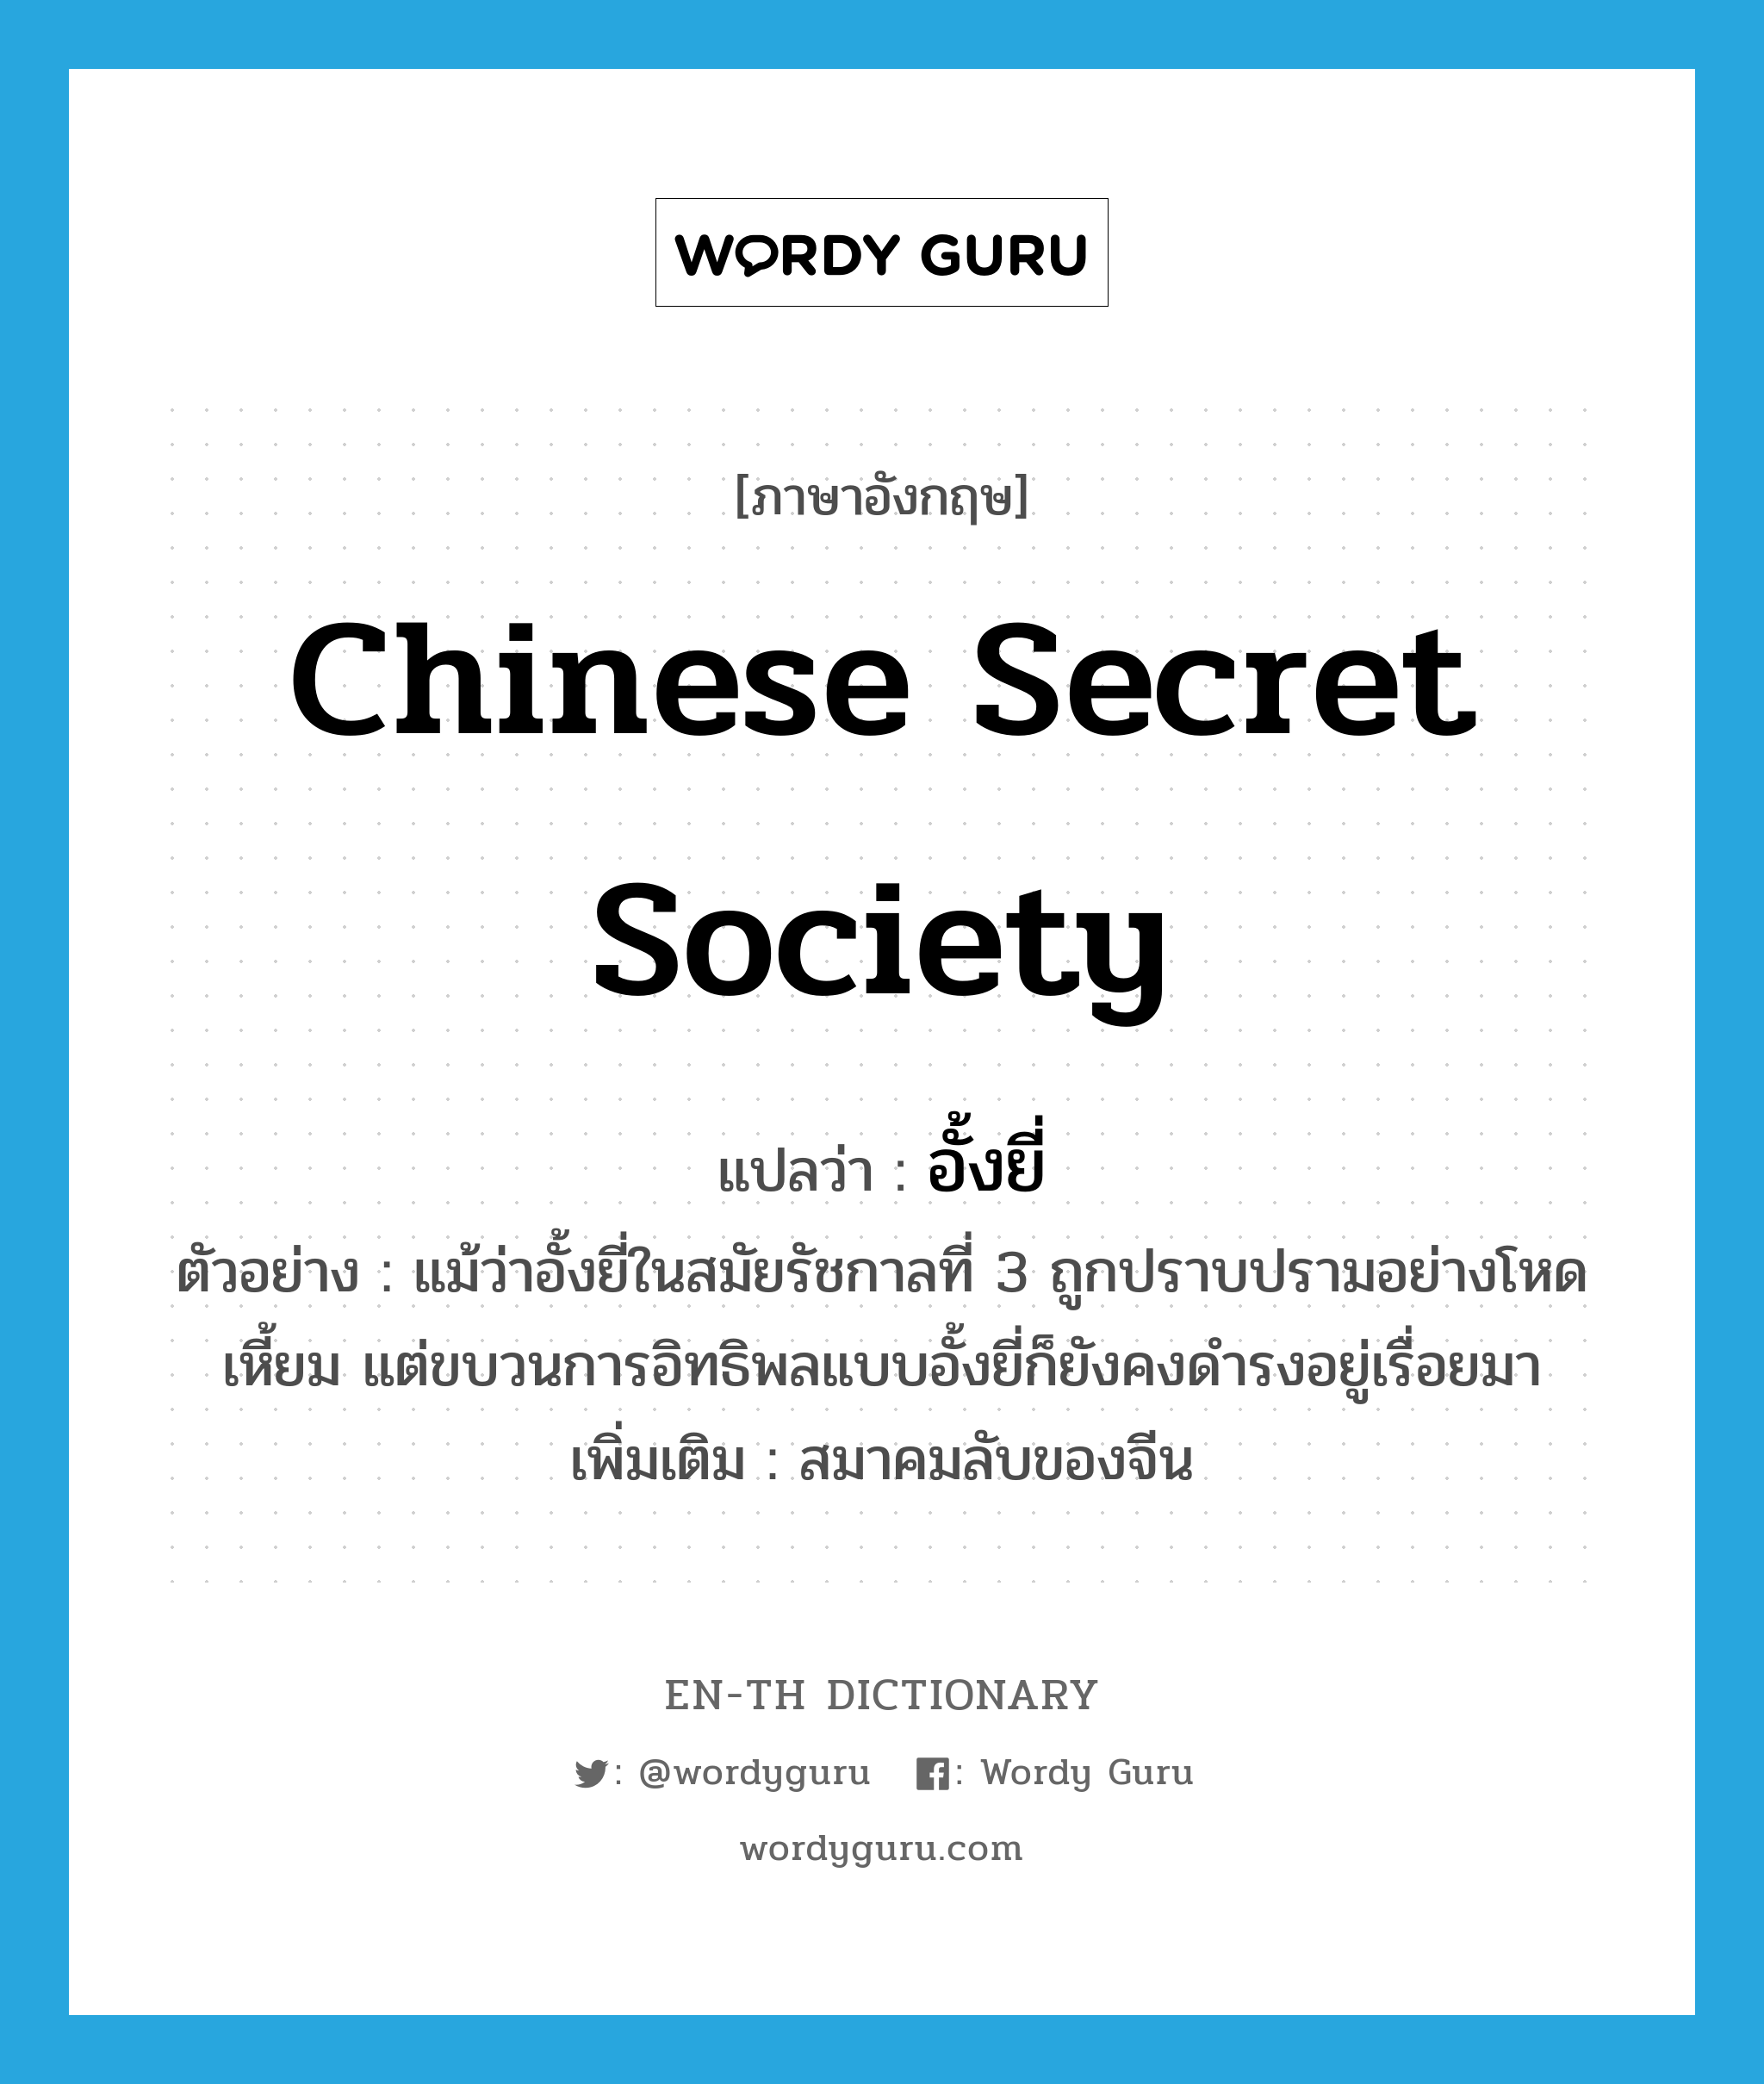 Chinese secret society แปลว่า?, คำศัพท์ภาษาอังกฤษ Chinese secret society แปลว่า อั้งยี่ ประเภท N ตัวอย่าง แม้ว่าอั้งยี่ในสมัยรัชกาลที่ 3 ถูกปราบปรามอย่างโหดเหี้ยม แต่ขบวนการอิทธิพลแบบอั้งยี่ก็ยังคงดำรงอยู่เรื่อยมา เพิ่มเติม สมาคมลับของจีน หมวด N